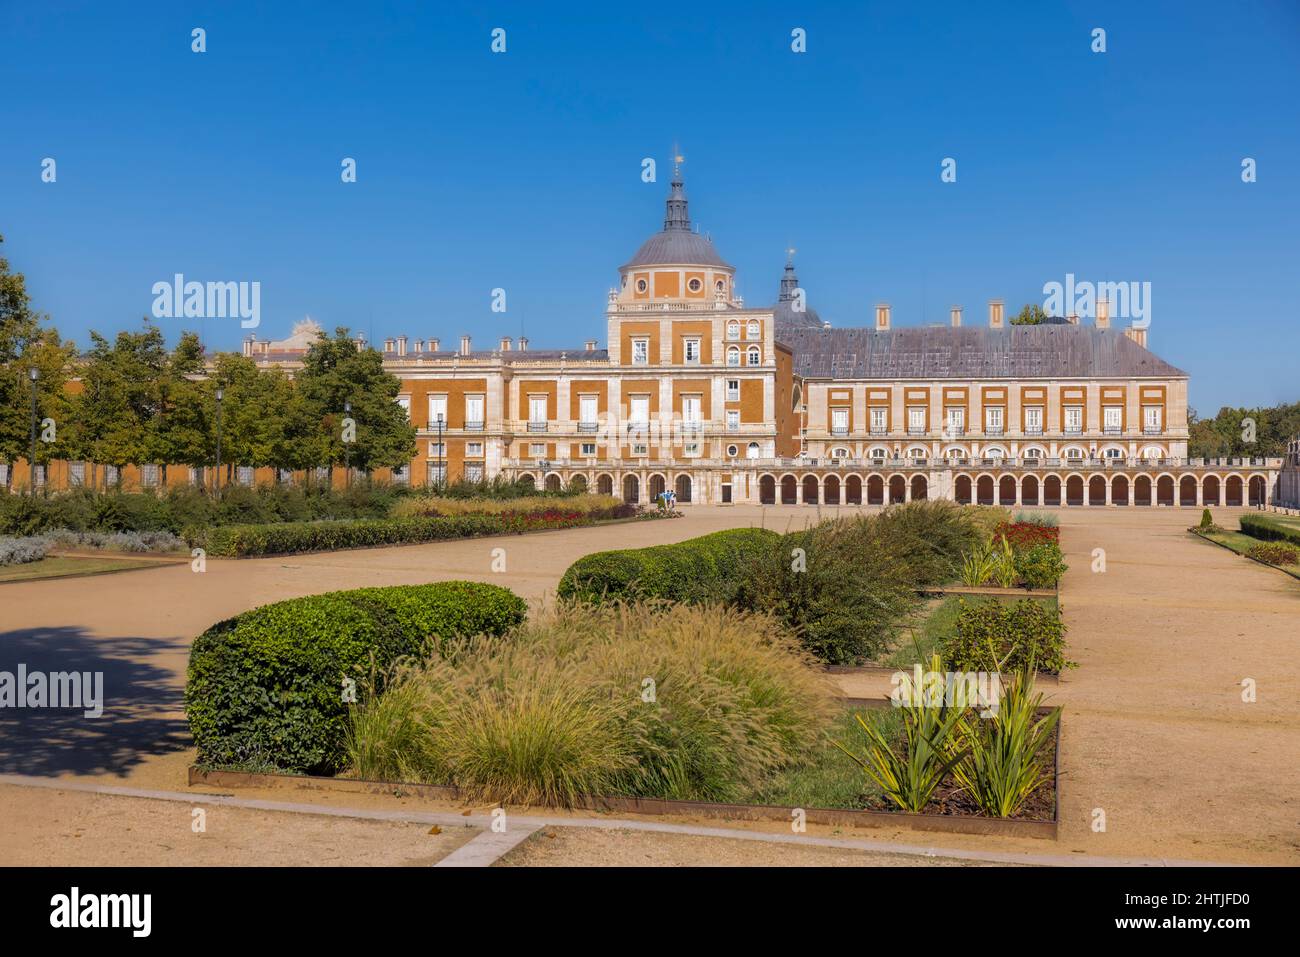 Le Palais Royal d'Aranjuez vu de l'autre côté de la Plaza de Parejas, Aranjuez, Communauté de Madrid, Espagne. Le palais fait partie du réseau culturel d'Aranjuez Banque D'Images